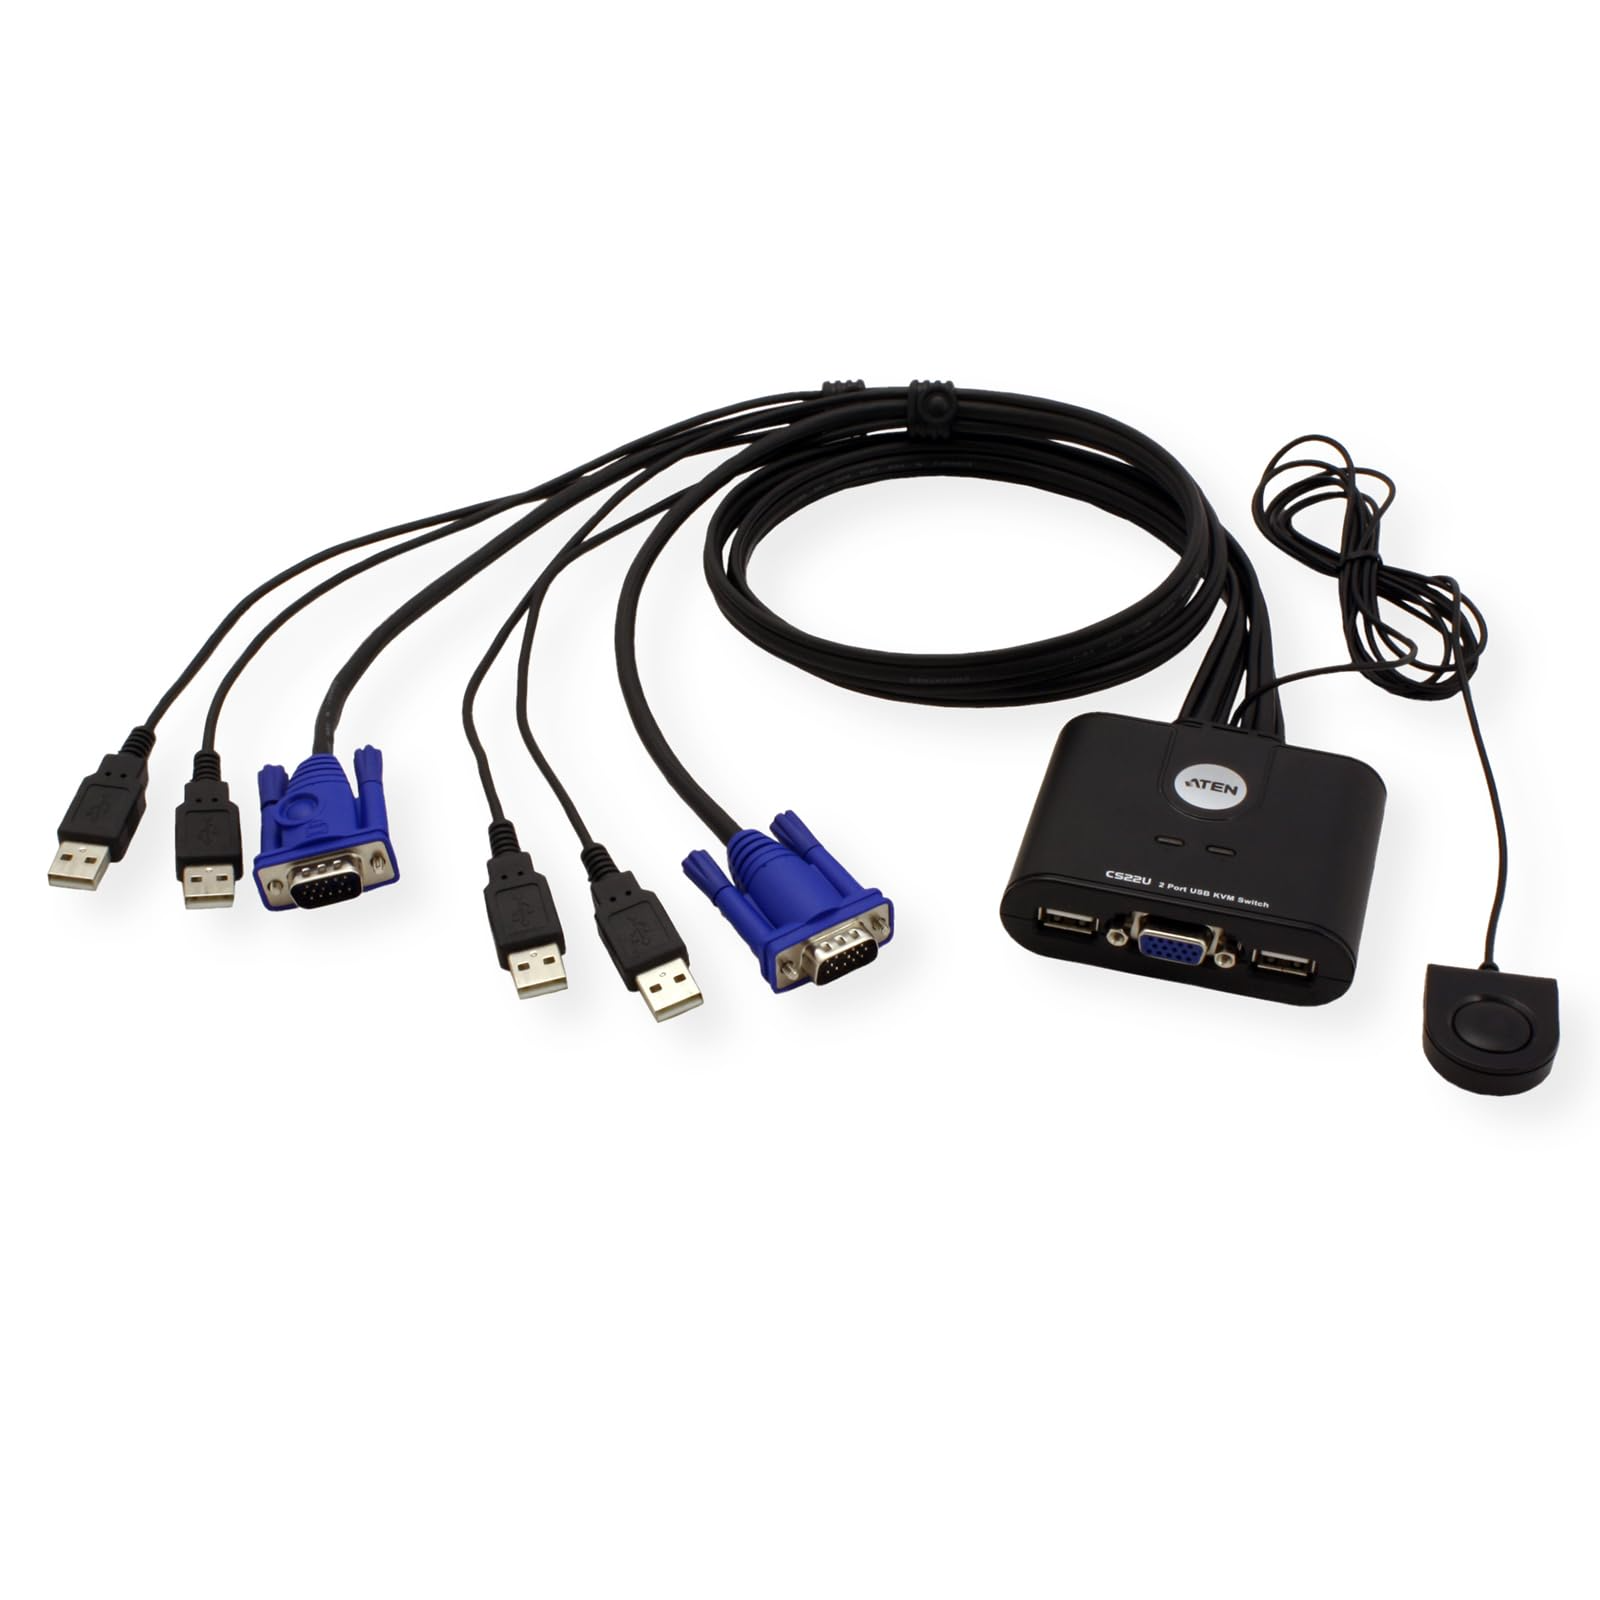 Aten 4475 2 Port USB VGA KVM Switch : Amazon.com.tr: Bilgisayar